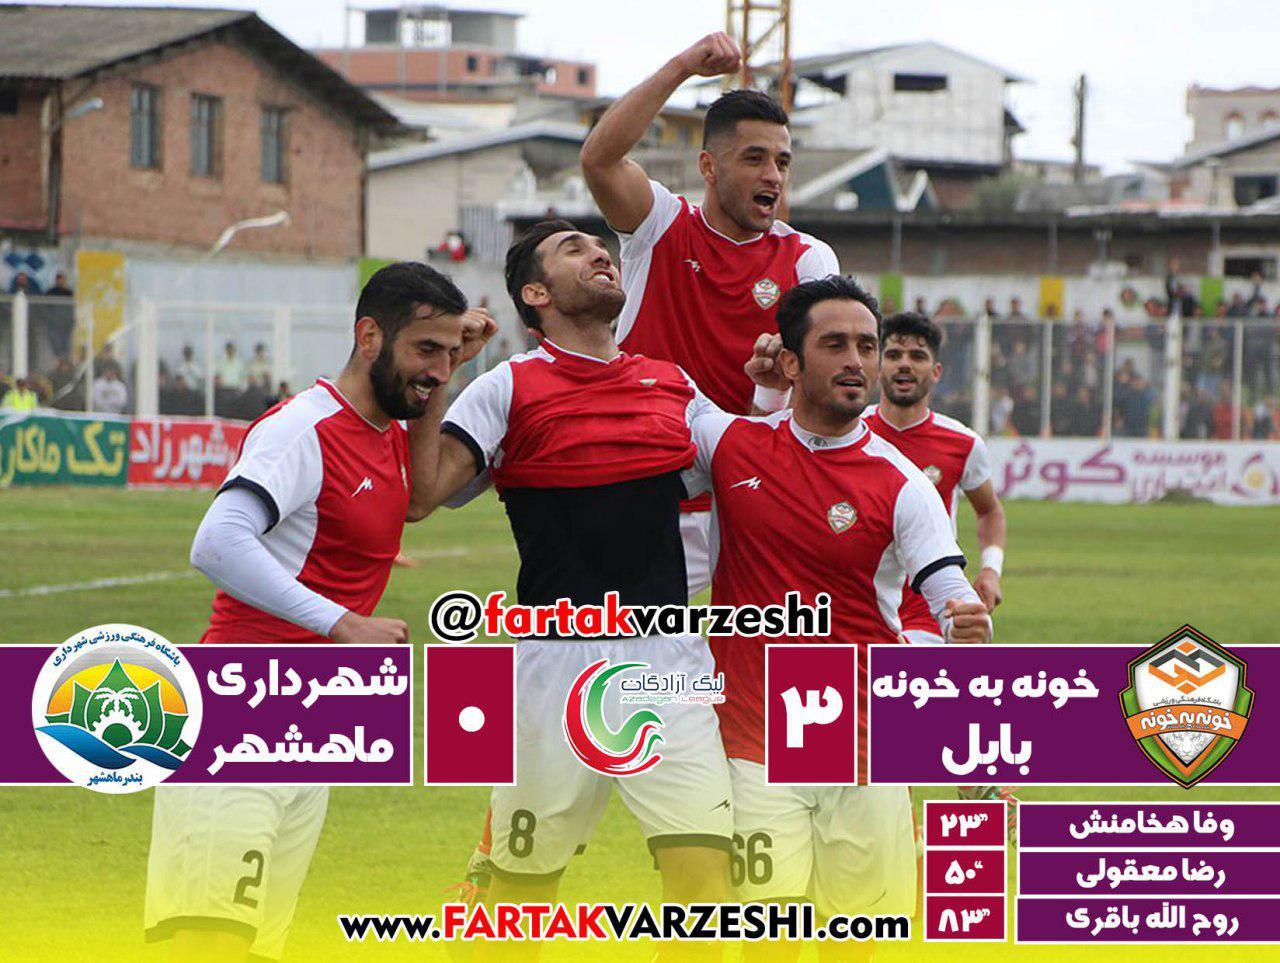 لیگ یک| پیروزی خونه به خونه مقابل شهرداری ماهشهر؛ اسکوچیچ به مرزبان درس فوتبال داد/ بابلی‌ها یک گام به لیگ برتر نزدیک شدند